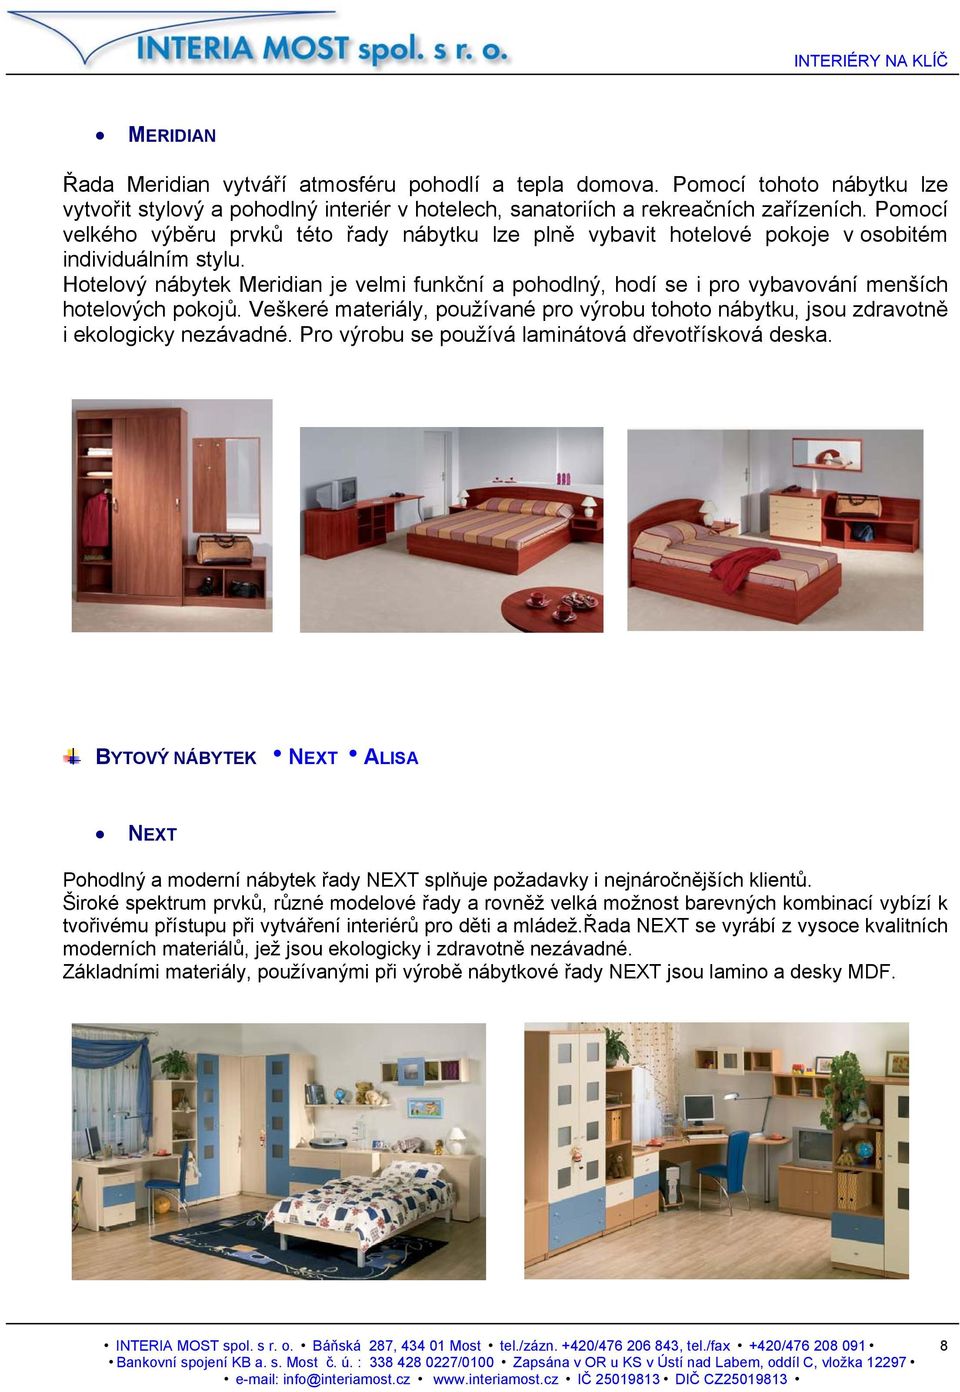 Hotelový nábytek Meridian je velmi funkční a pohodlný, hodí se i pro vybavování menších hotelových pokojů.